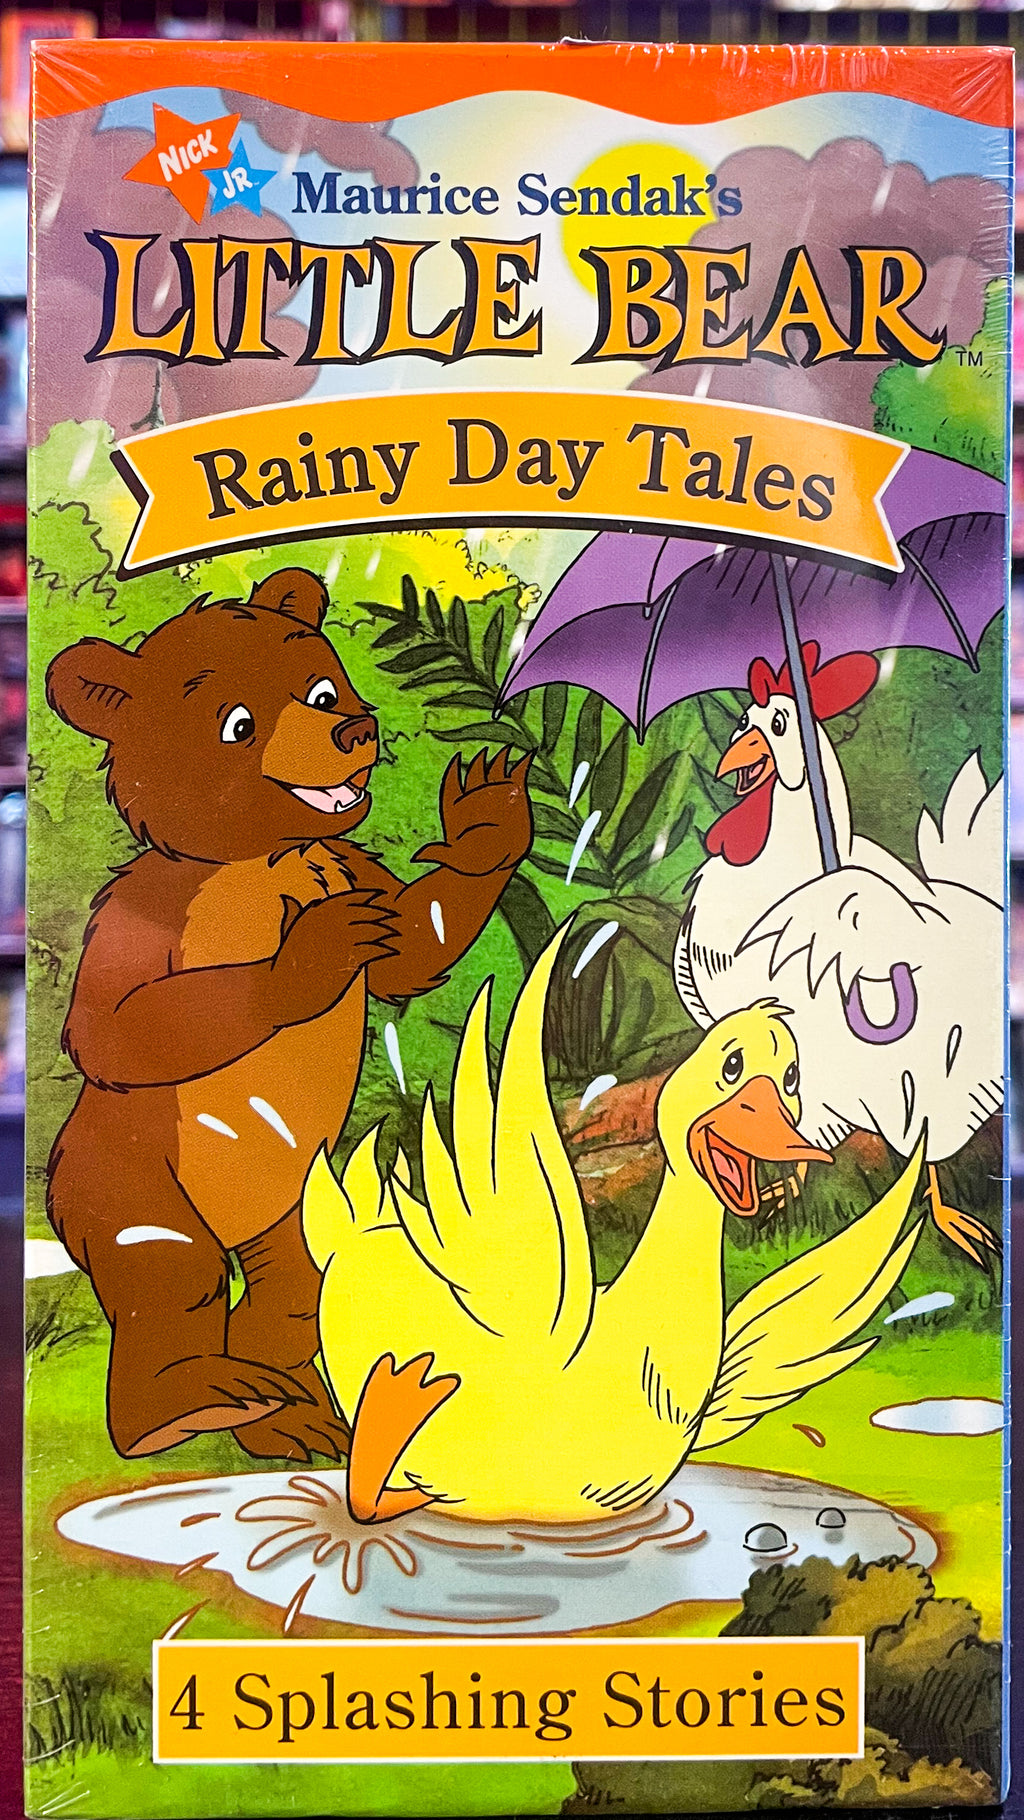 Little Bear: Rainy Day Tales